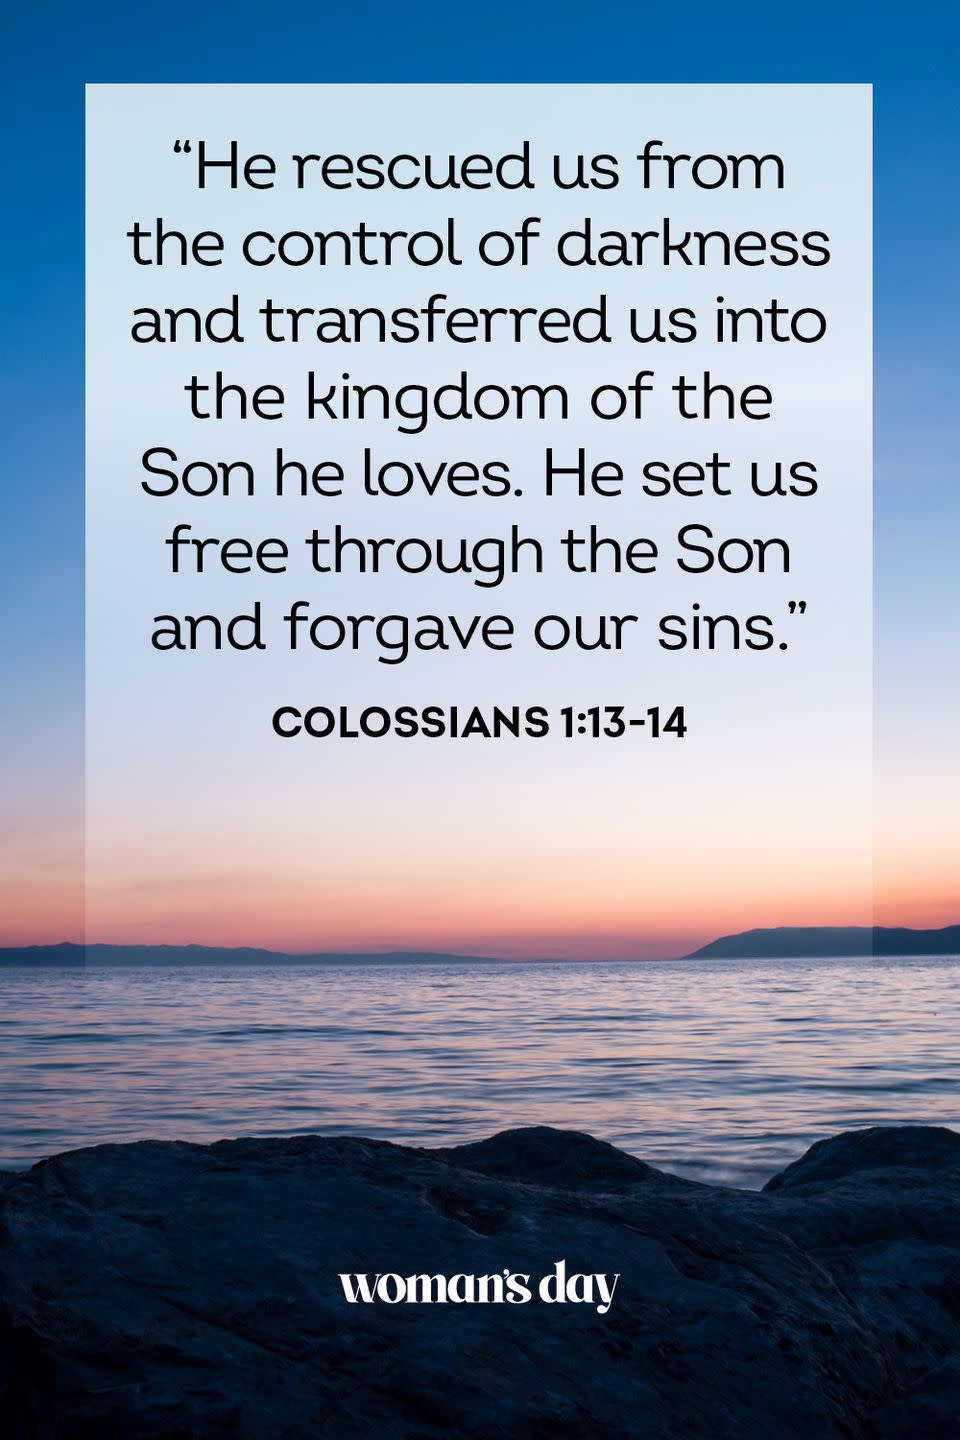 38) Colossians 1:13-14